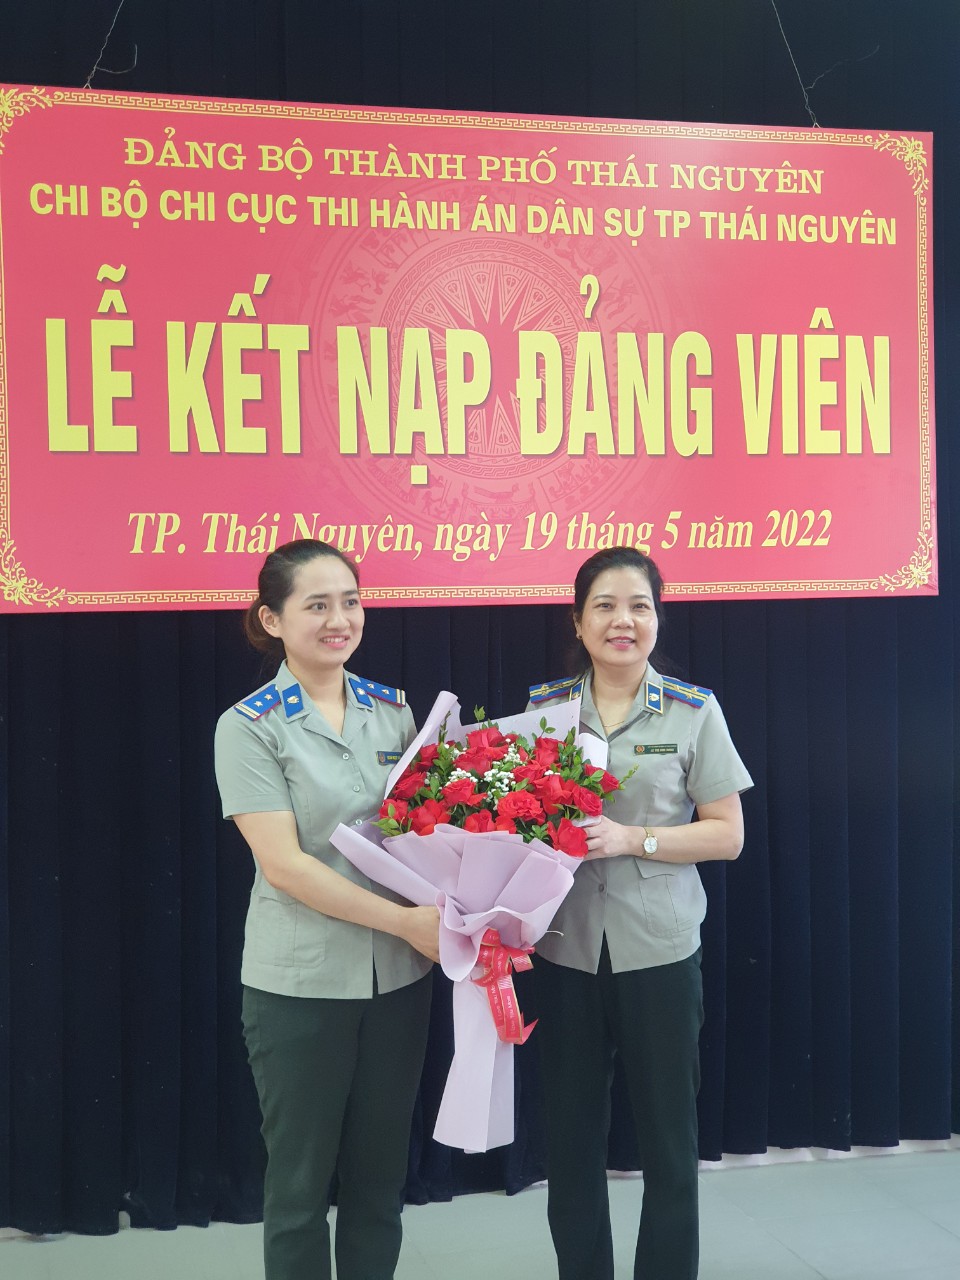 Chi bộ Chi cục THADS TP Thái Nguyên tổ chức Lễ kết nạp đảng viên